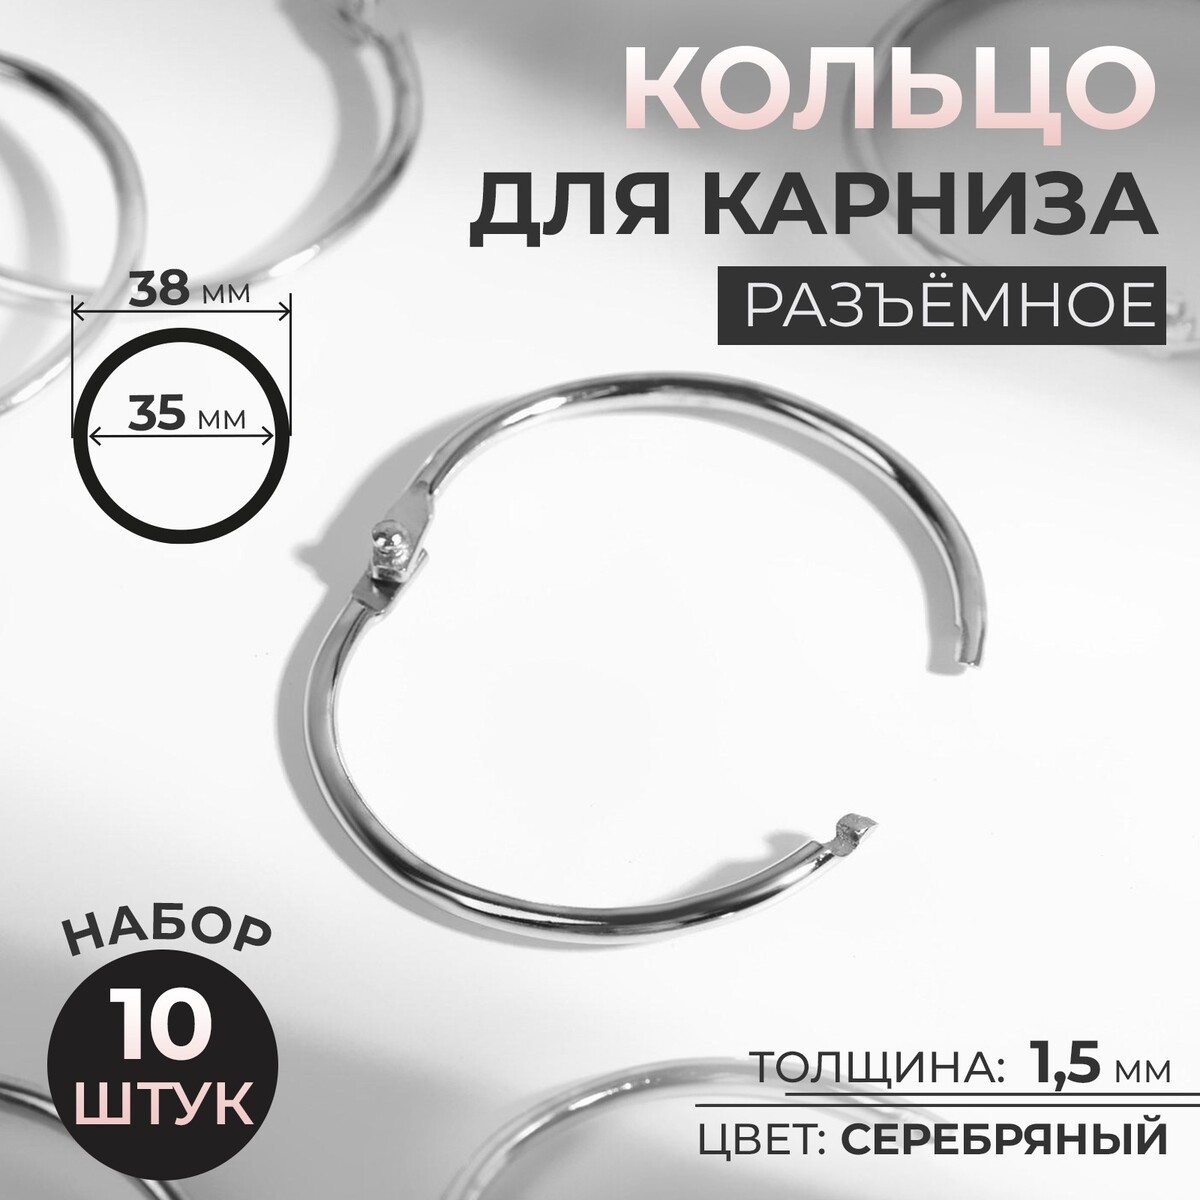 Кольцо для карниза, разъемное, d = 35/38 мм, 10 шт, цвет серебряный кольцо для карниза разъемное d 35 38 мм 10 шт серебряный